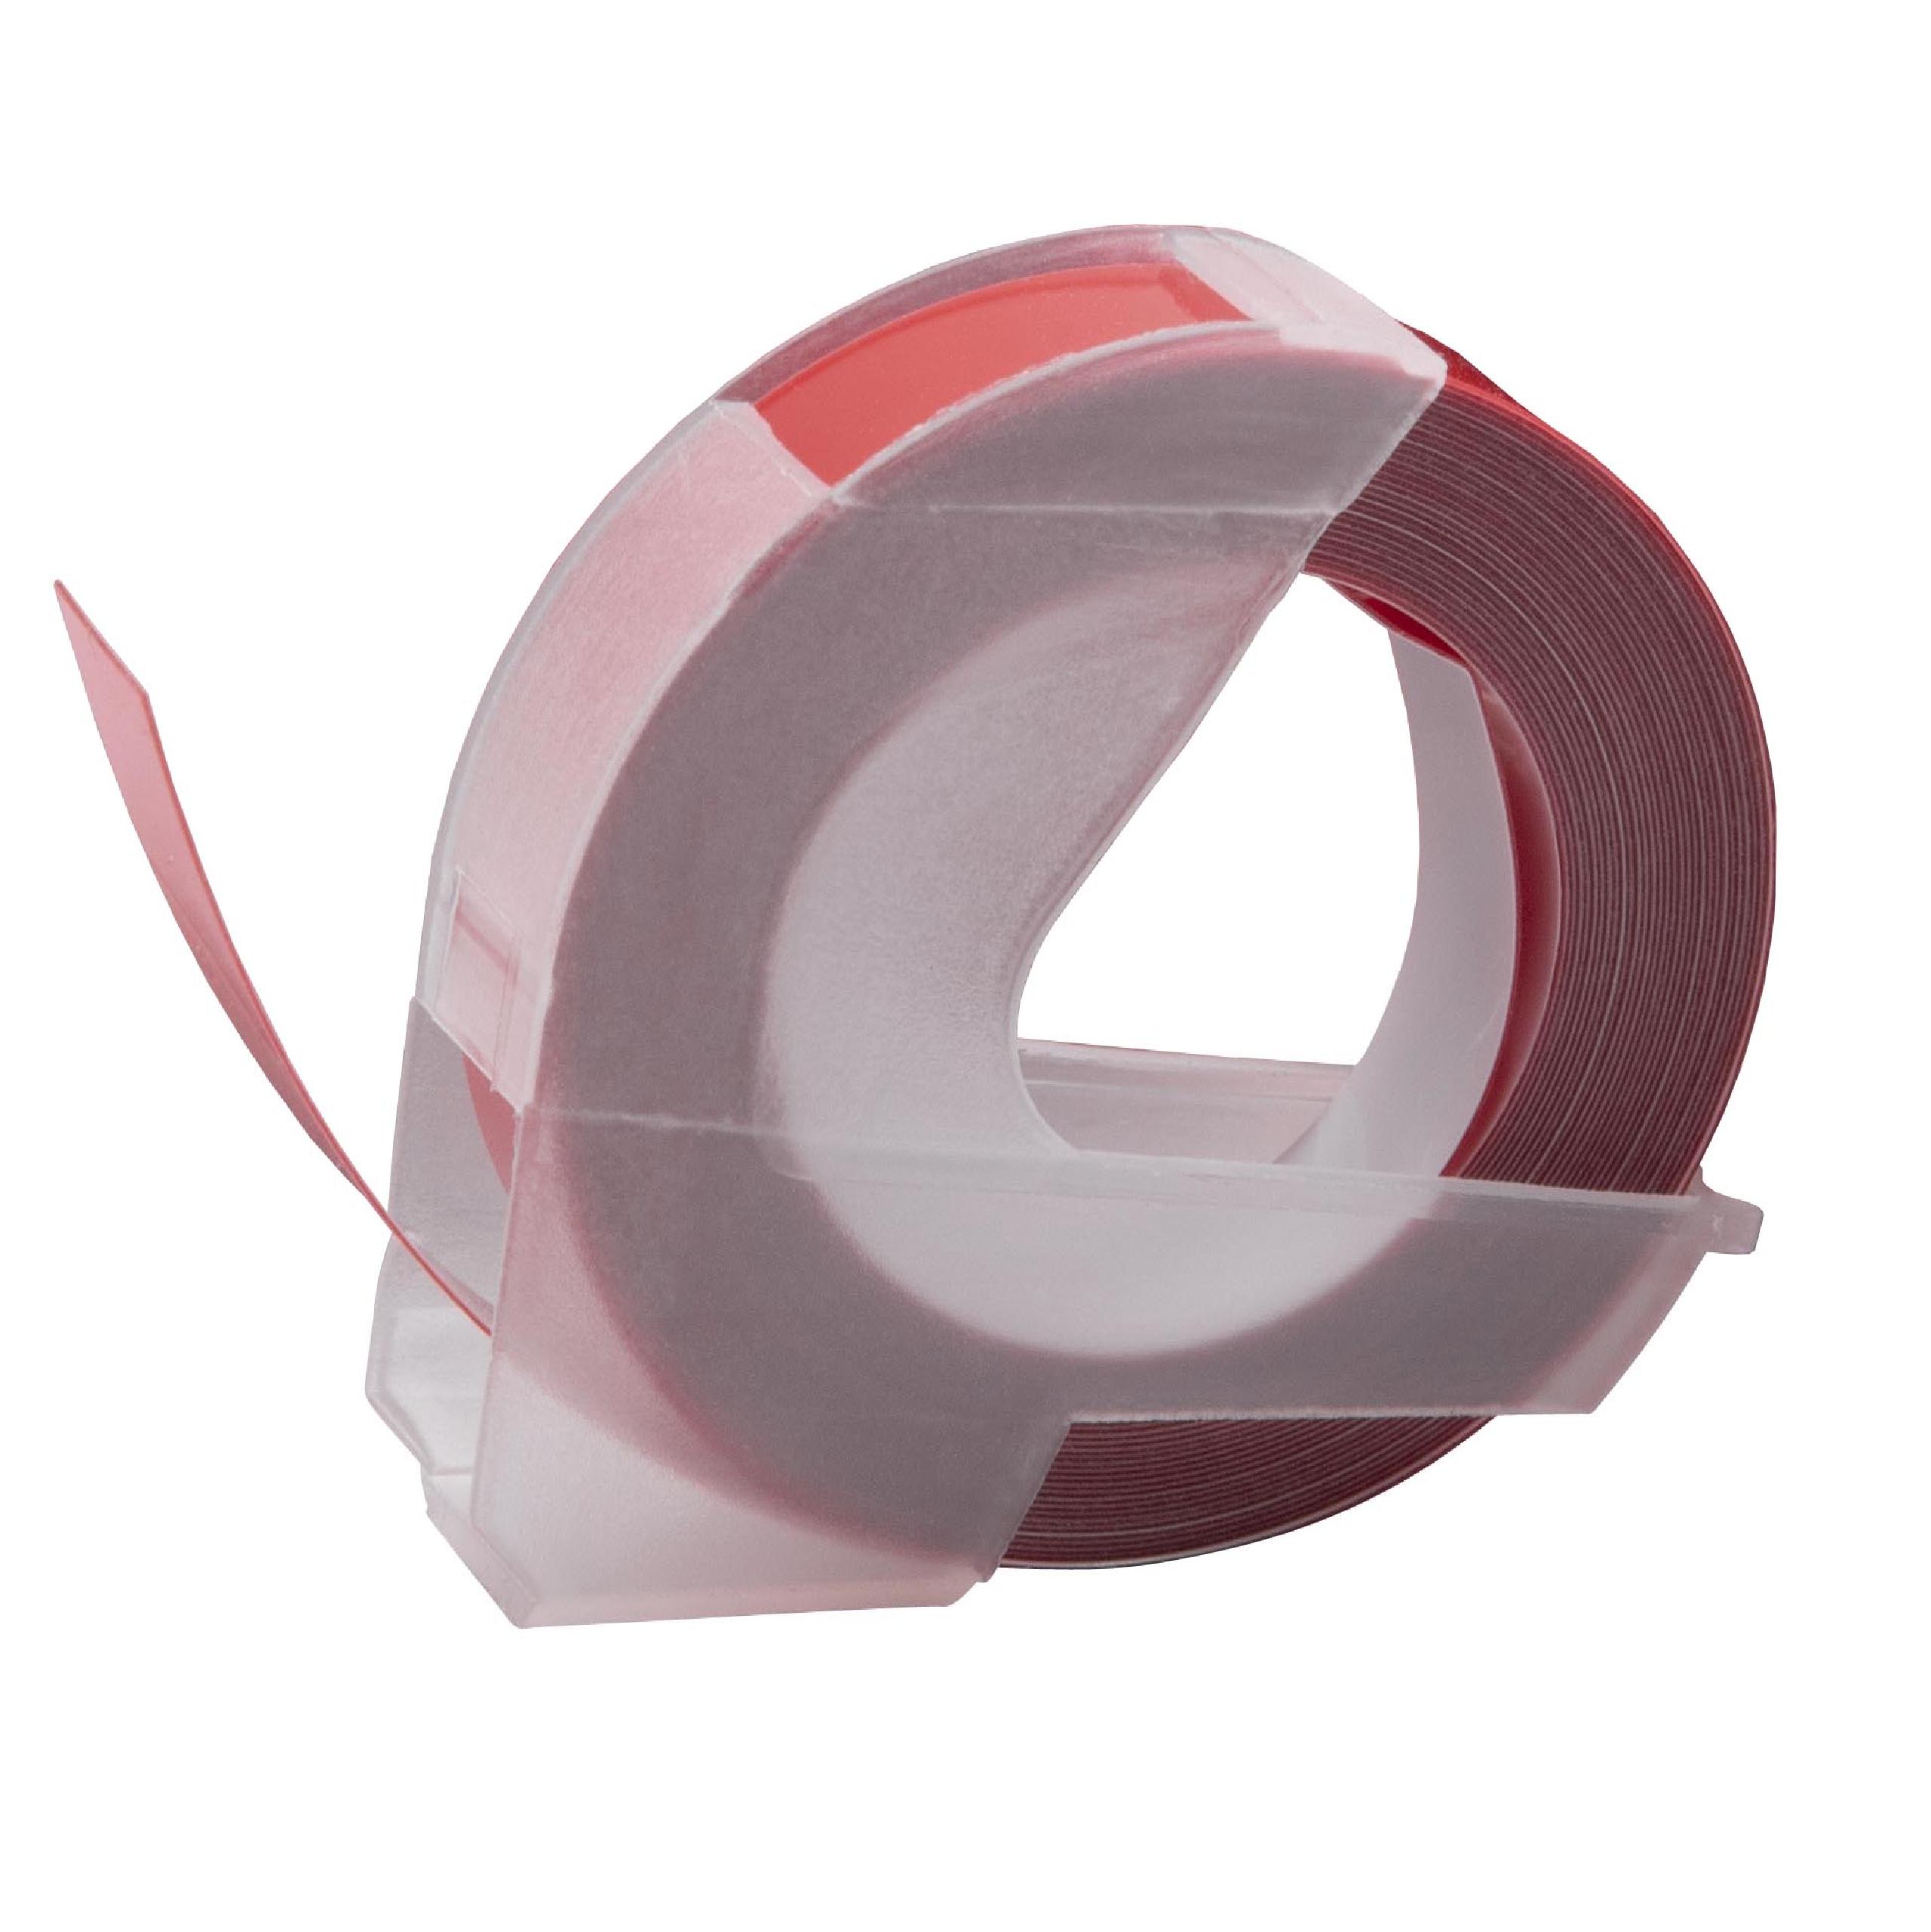 Casete cinta relieve 3D Casete cinta escritura reemplaza Dymo 520102, S0898150 Blanco su Rojo